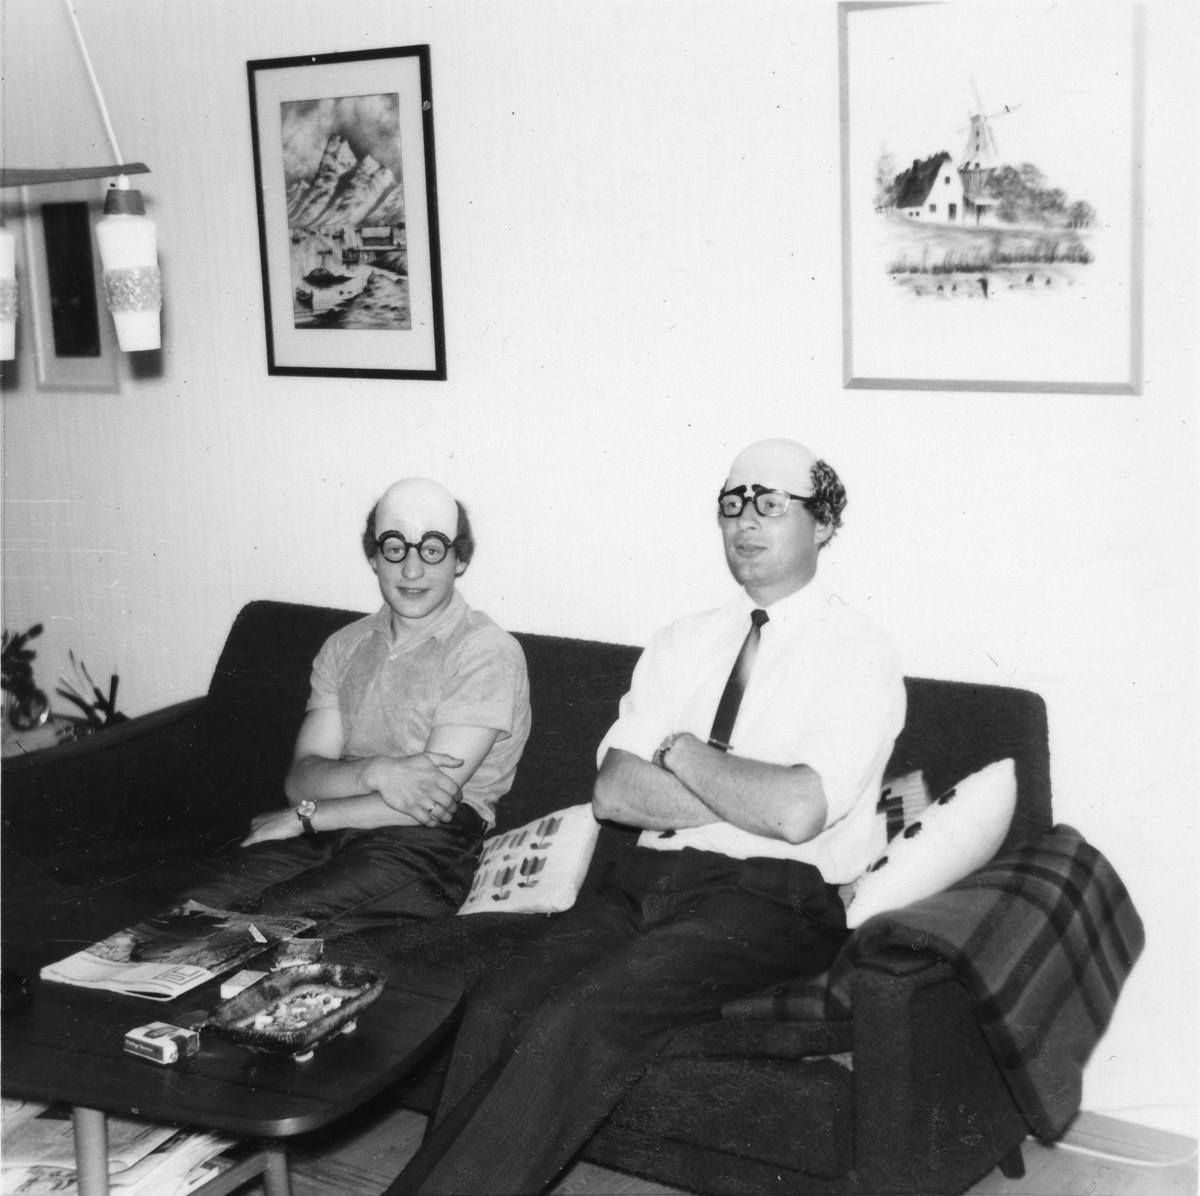 Brødrene Stefan og Rolf Strand med klovnemasker, fotografert i sofa inne.